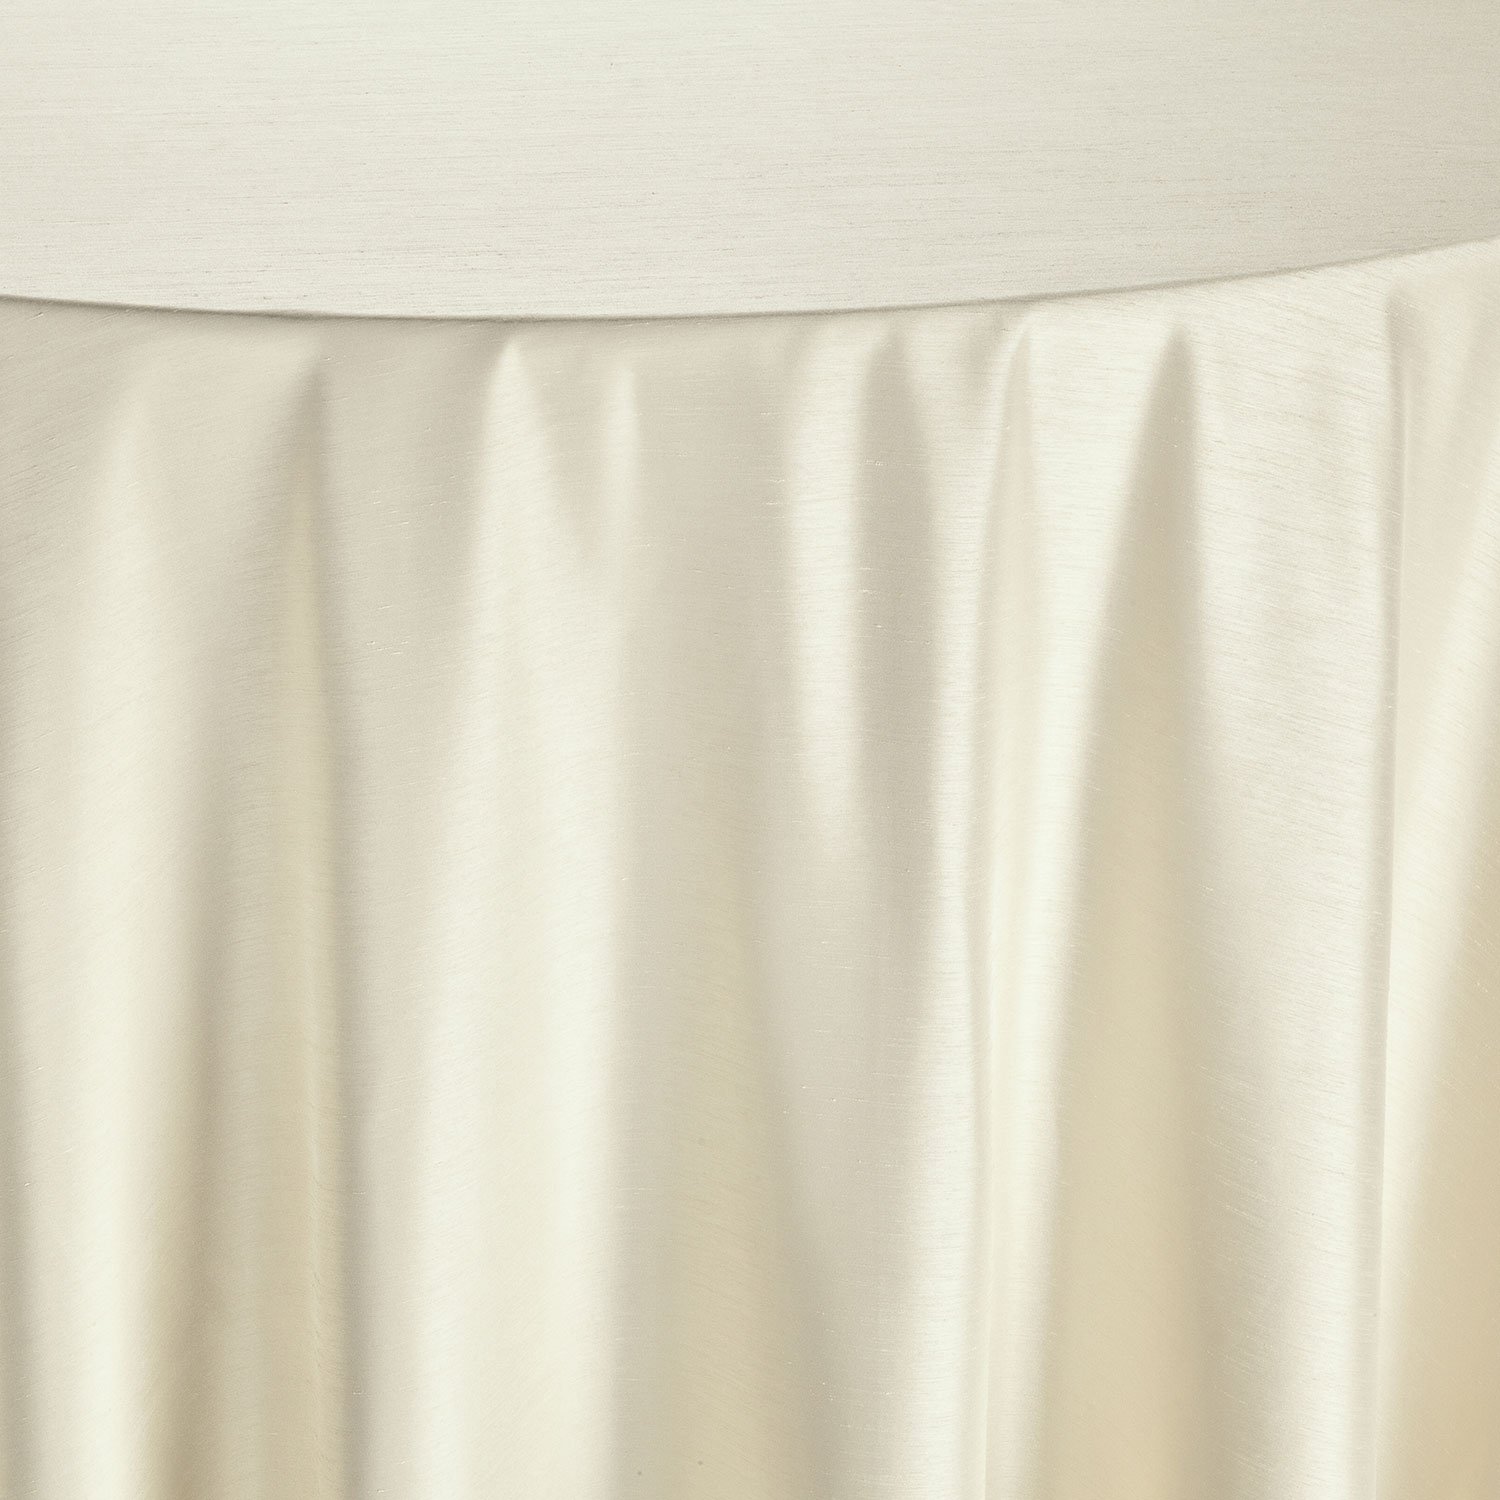 Shantung Ivory Table Linen - Linen Rentals | Wedding Table Linen ...